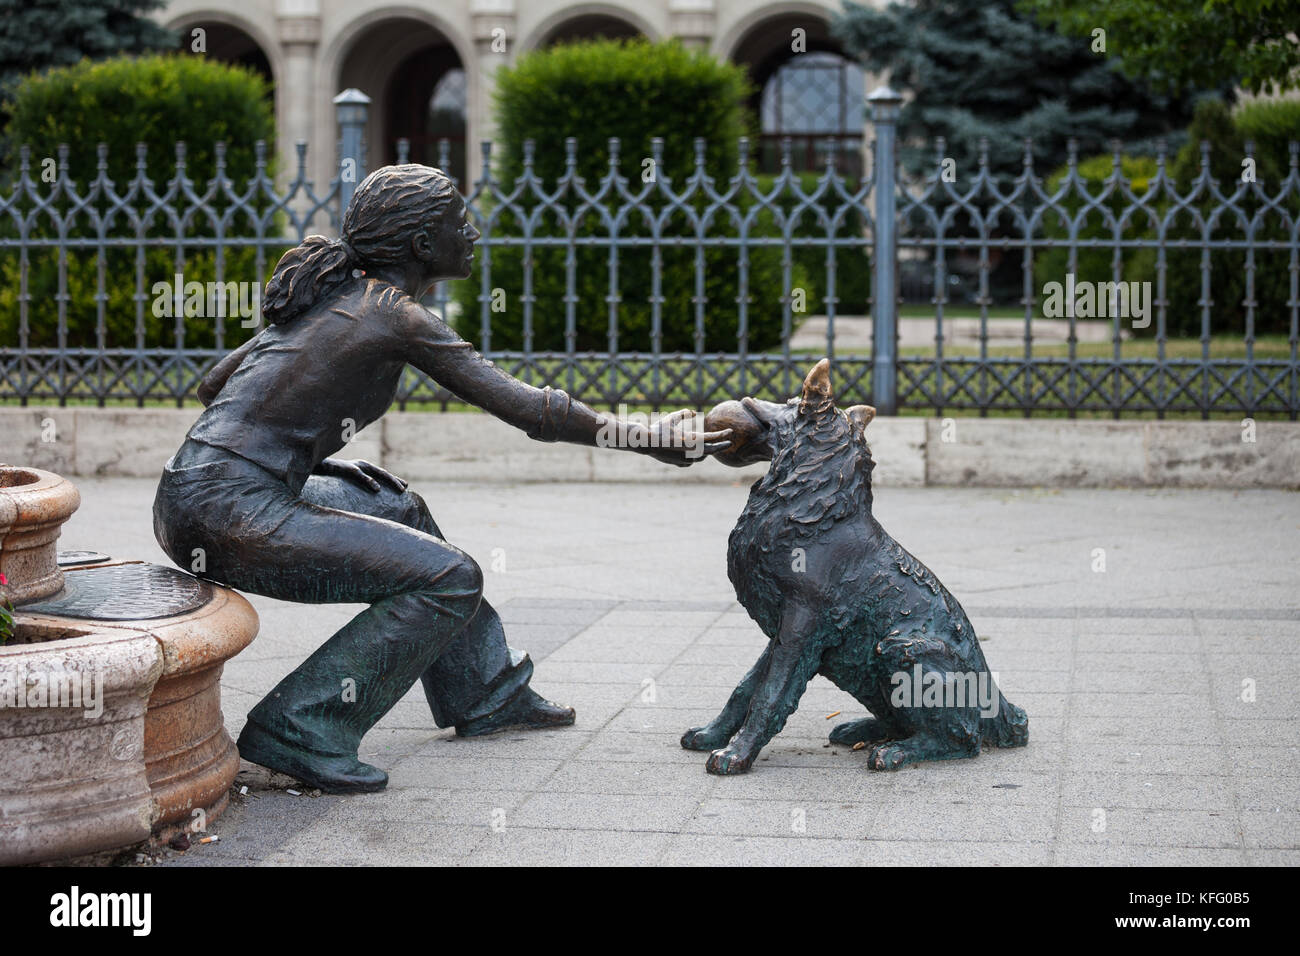 Chica con su perro, calle escultura en bronce, Plaza Vigado, ciudad de Budapest, Hungría, niña jugando con el animal con la bola en su boca Foto de stock